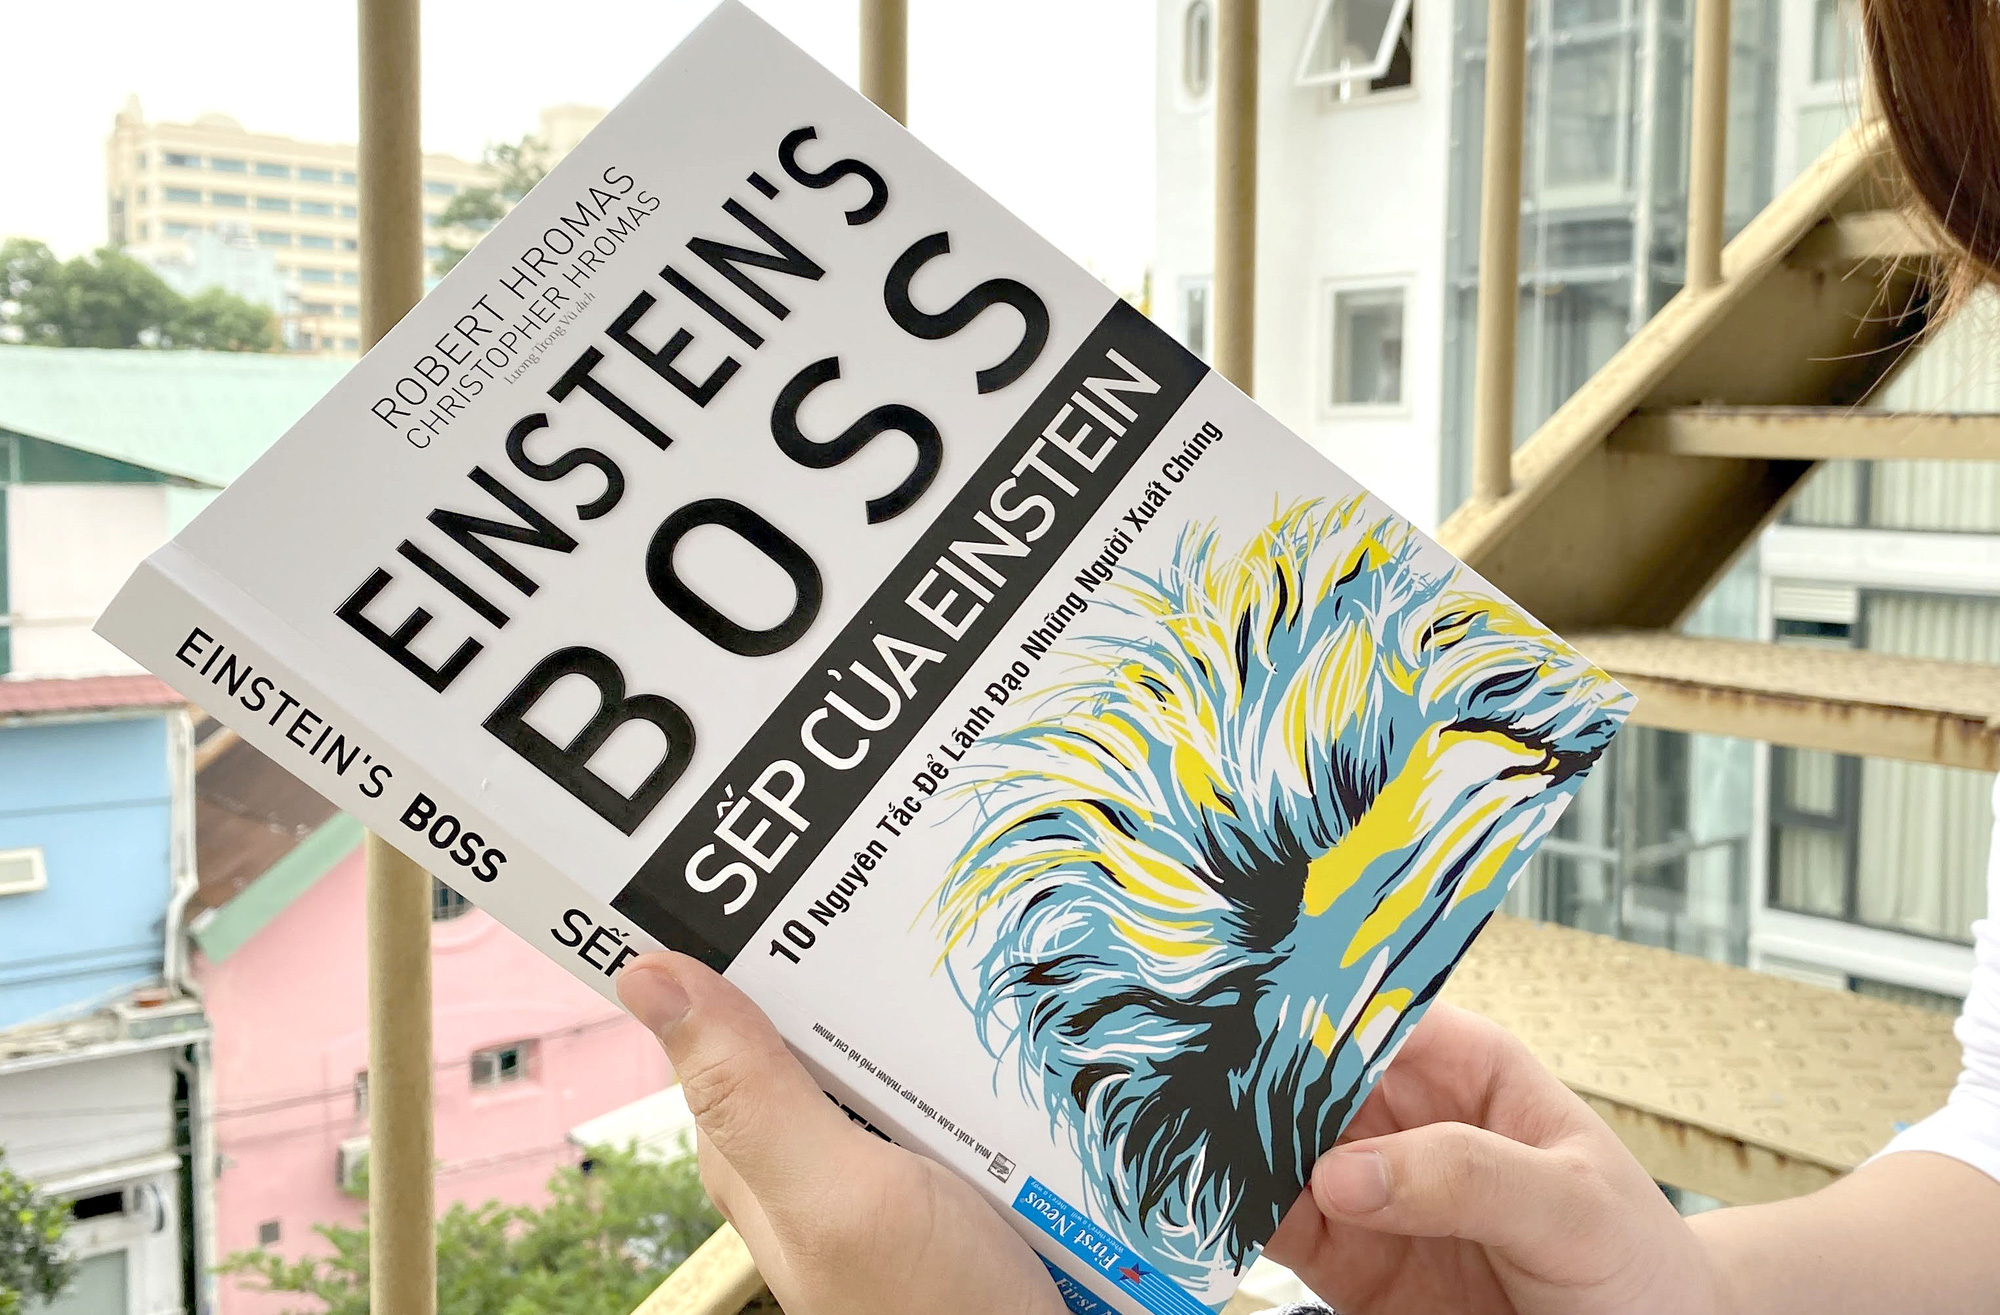 Cuốn sách bày cách lãnh đạo những người xuất chúng giống như Einstein - Ảnh 2.